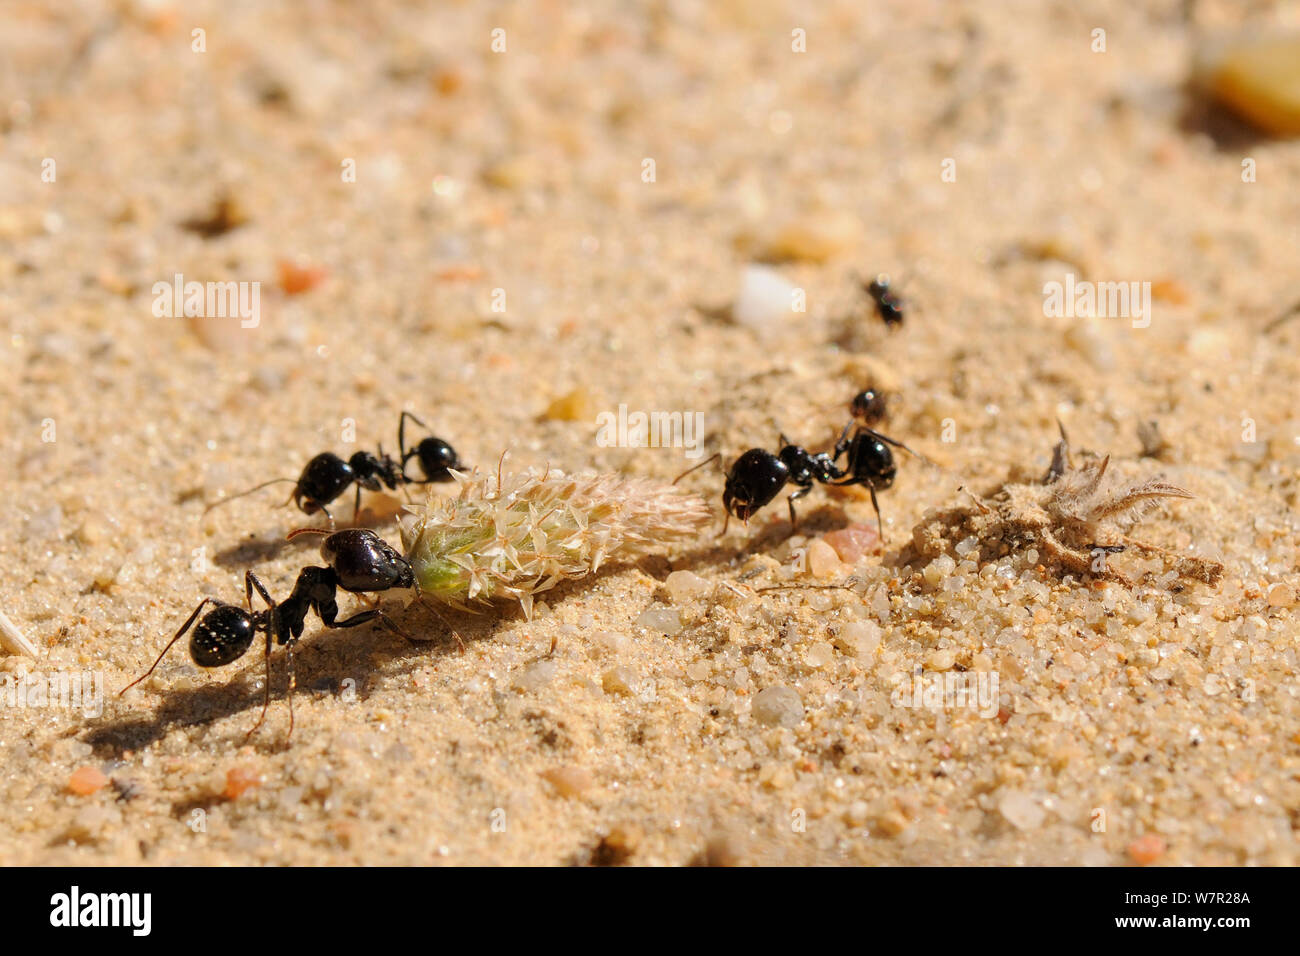 Europäische Erntemaschinen Ant (Messor sp.) große Arbeiter Co-operative ein wegerich flowerhead auf dem Weg zu ihrem Nest zu ziehen. Algarve, Portugal, Juni. Stockfoto